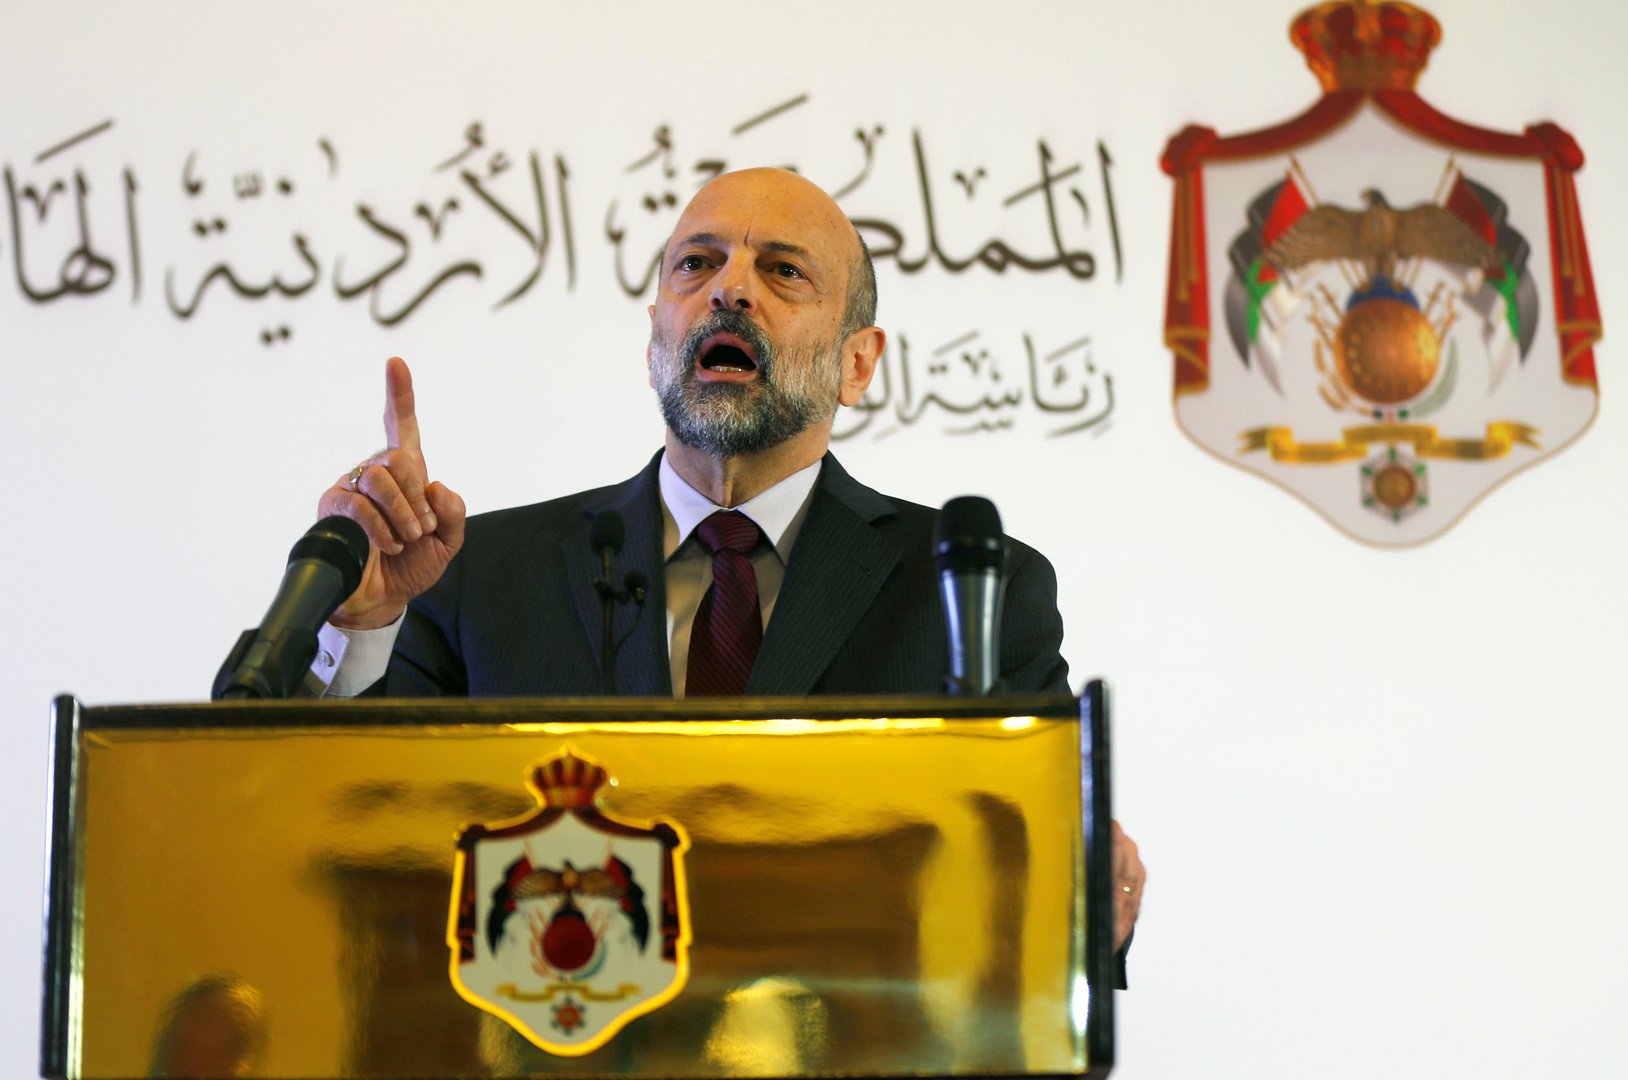 وزراء الحكومة الأردنية يقدمون استقالاتهم